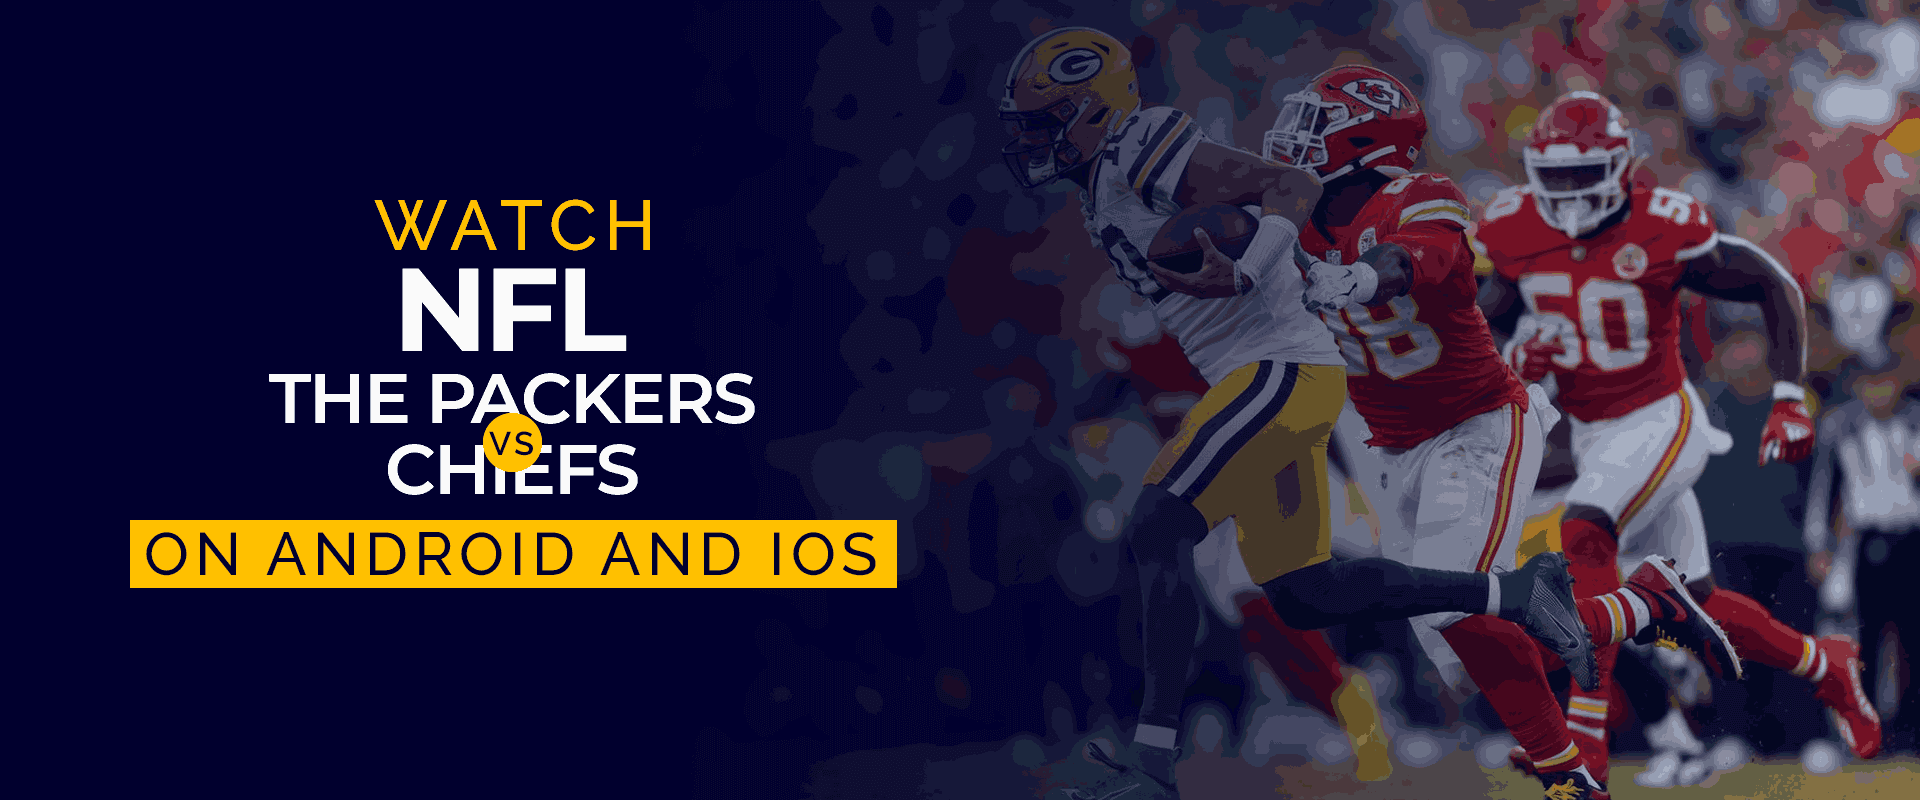 Смотрите NFL The Packers Vs Chiefs на Android и iOS